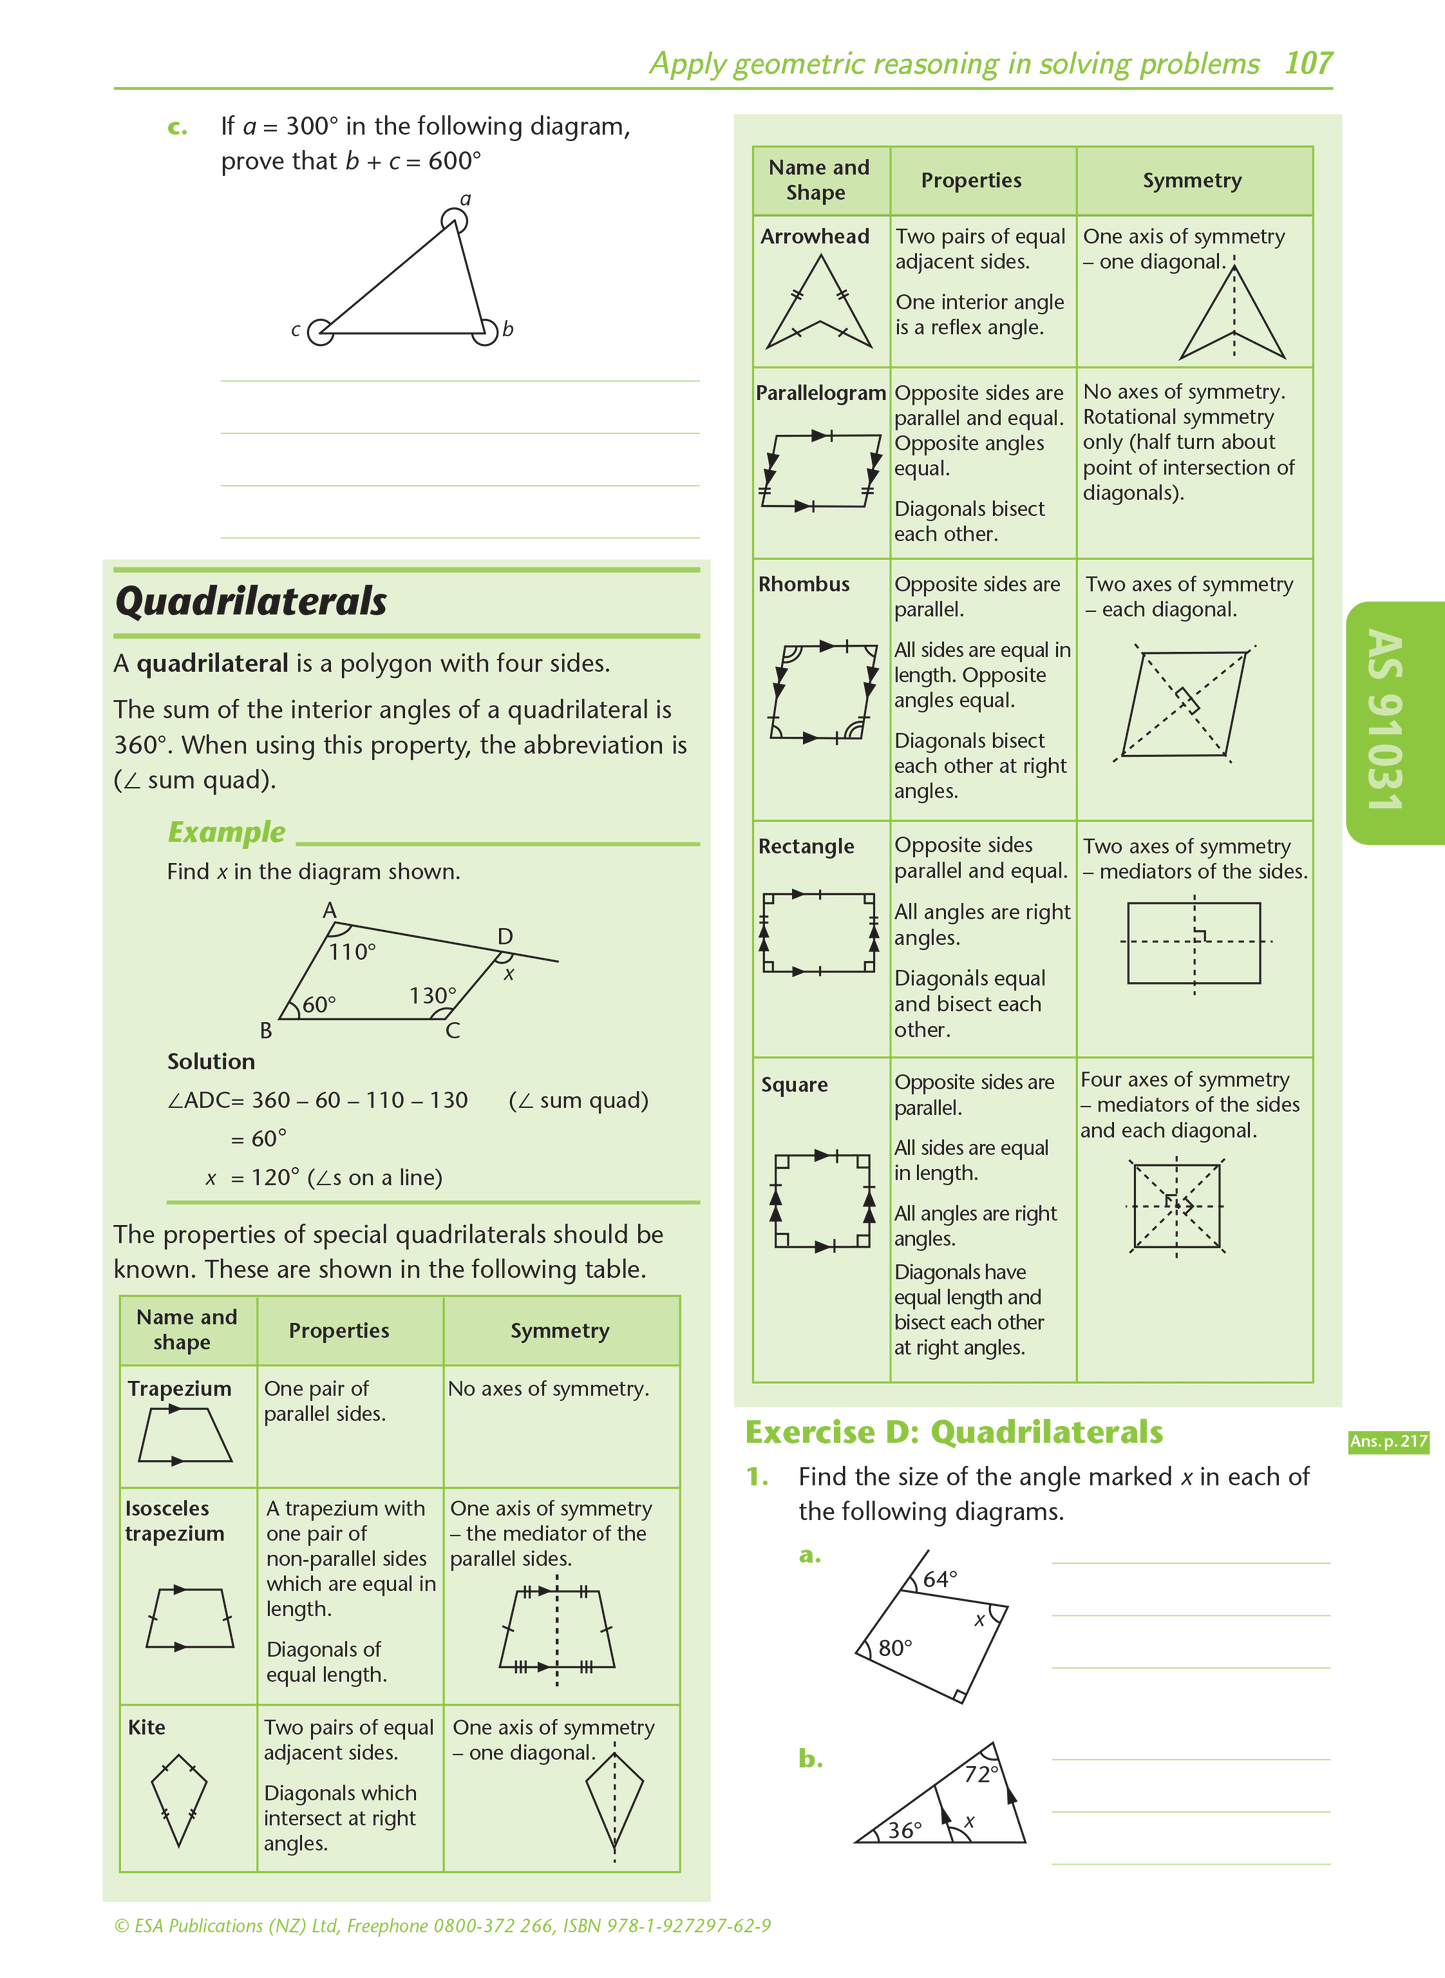 Level 1 Mathematics Externals Learning Workbook